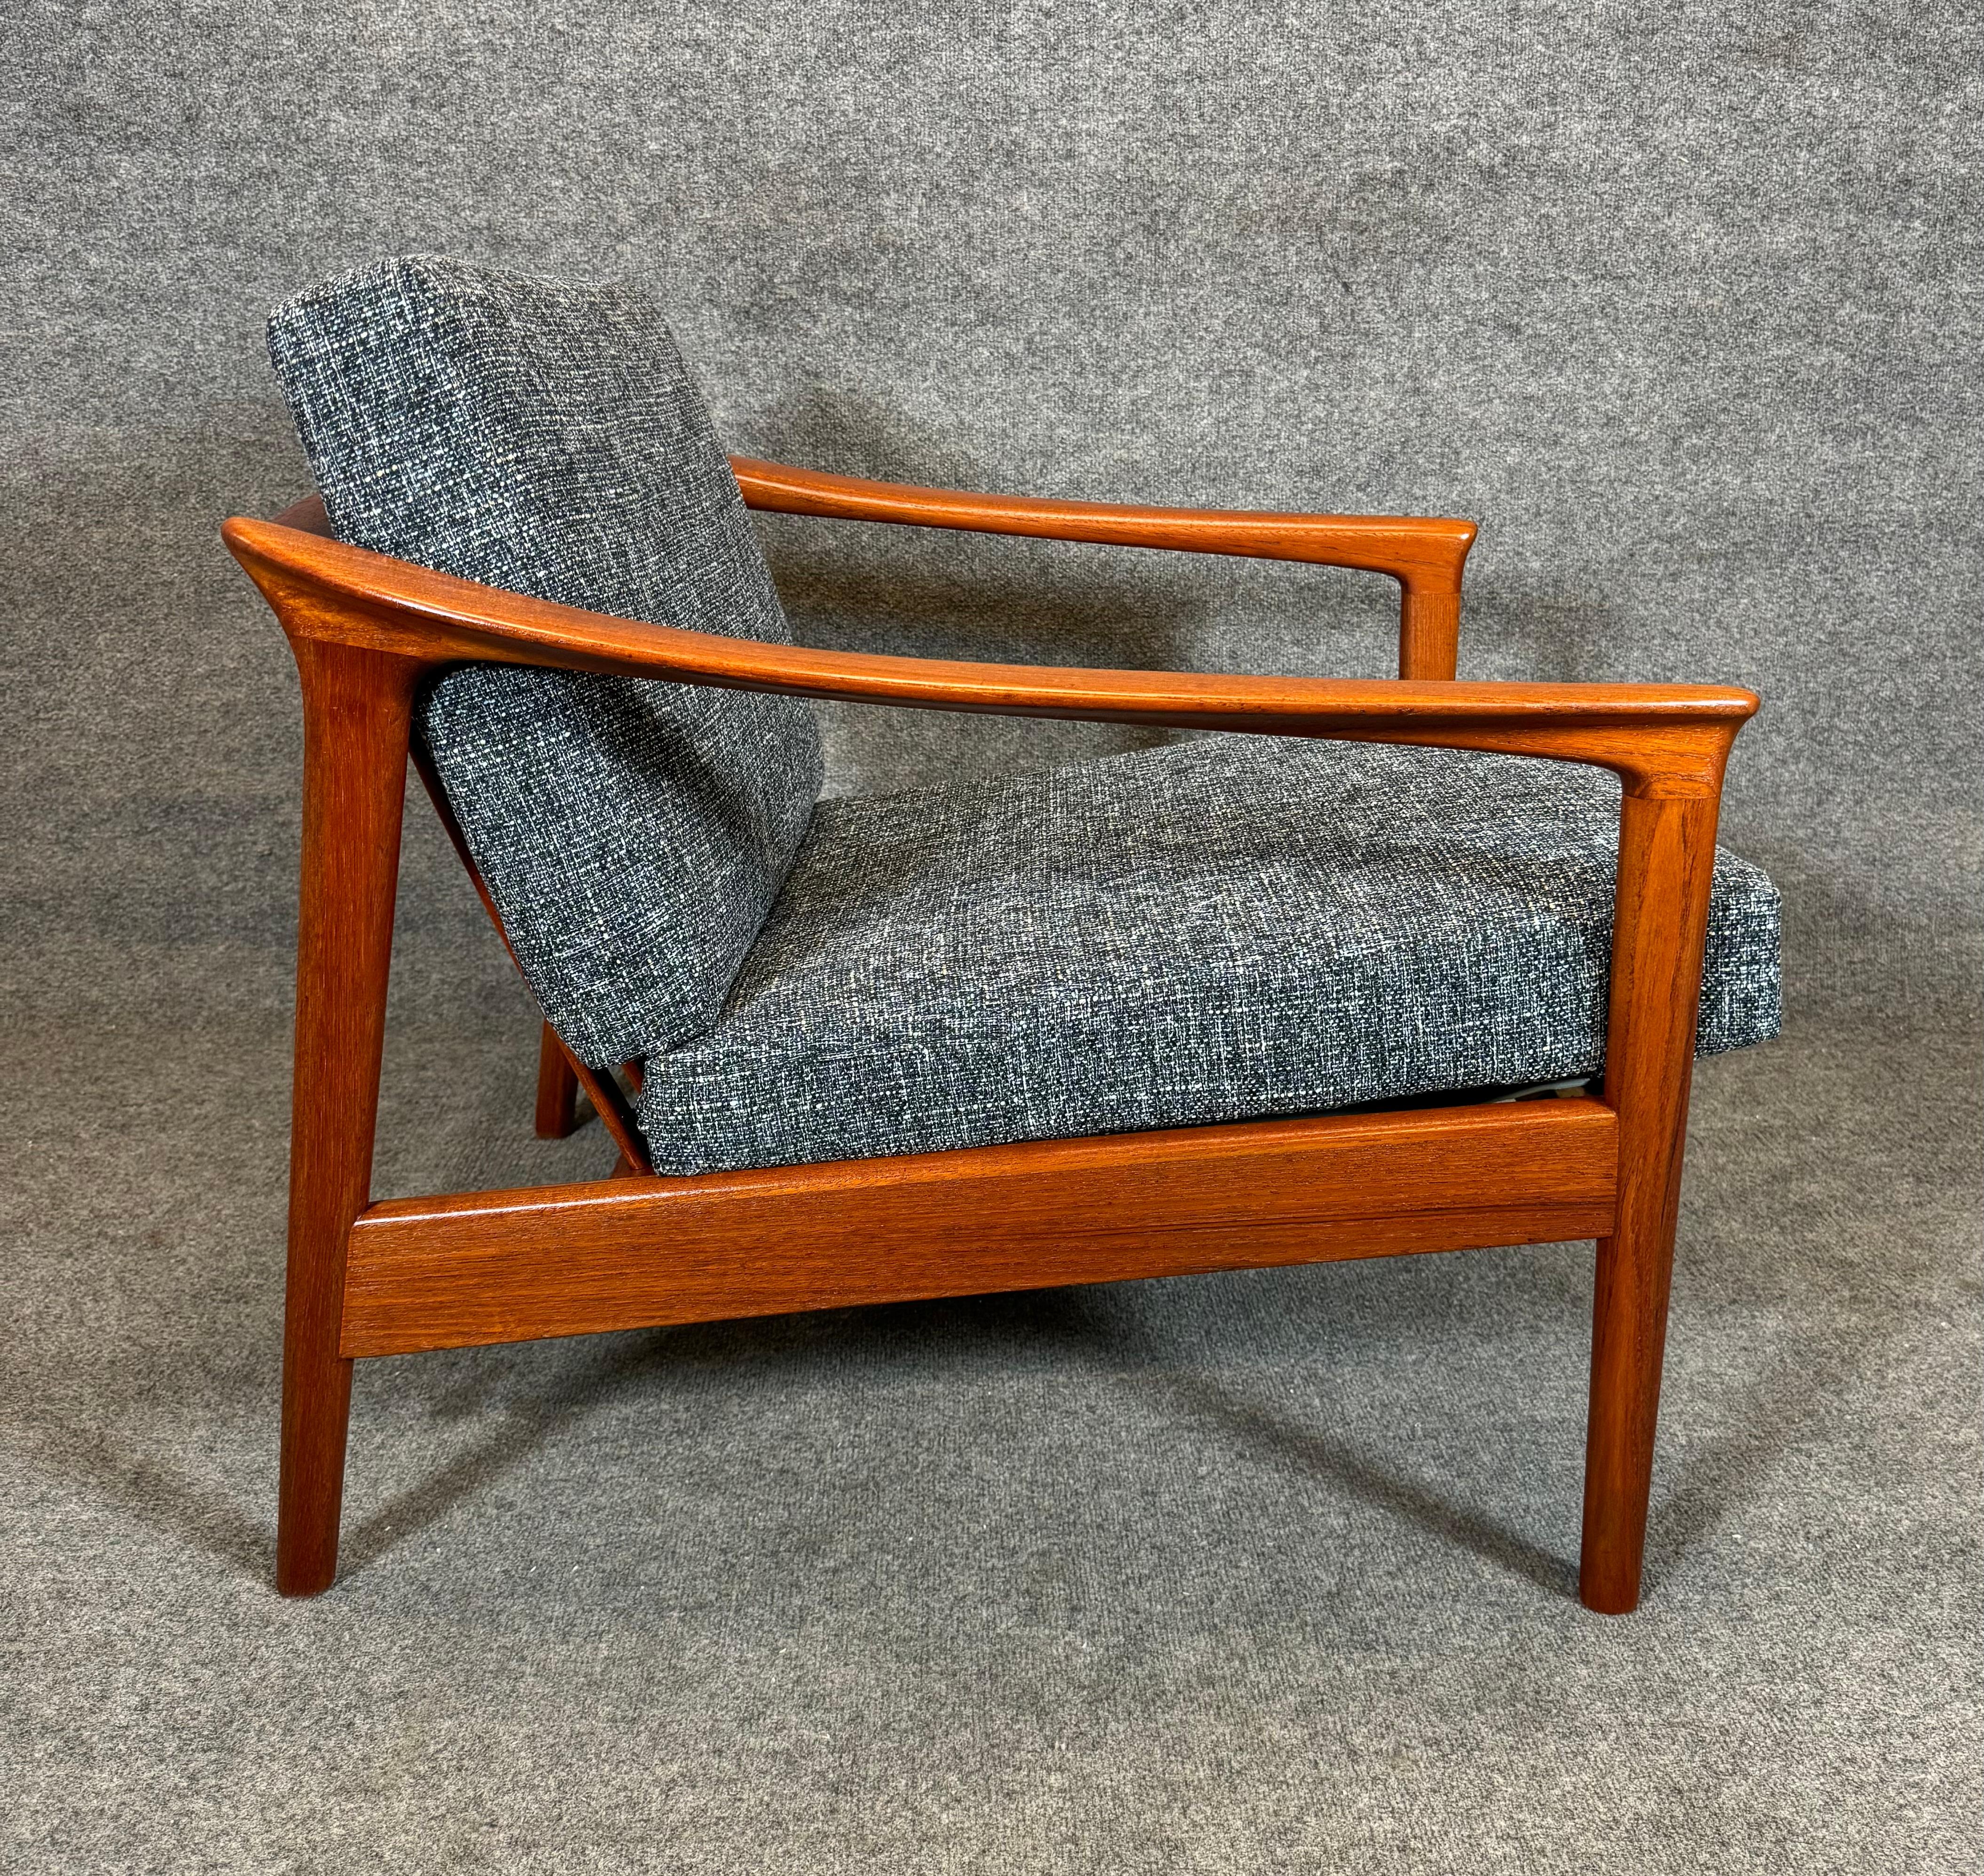 Here is a beautiful scandinavian modern easy chair in teak model 